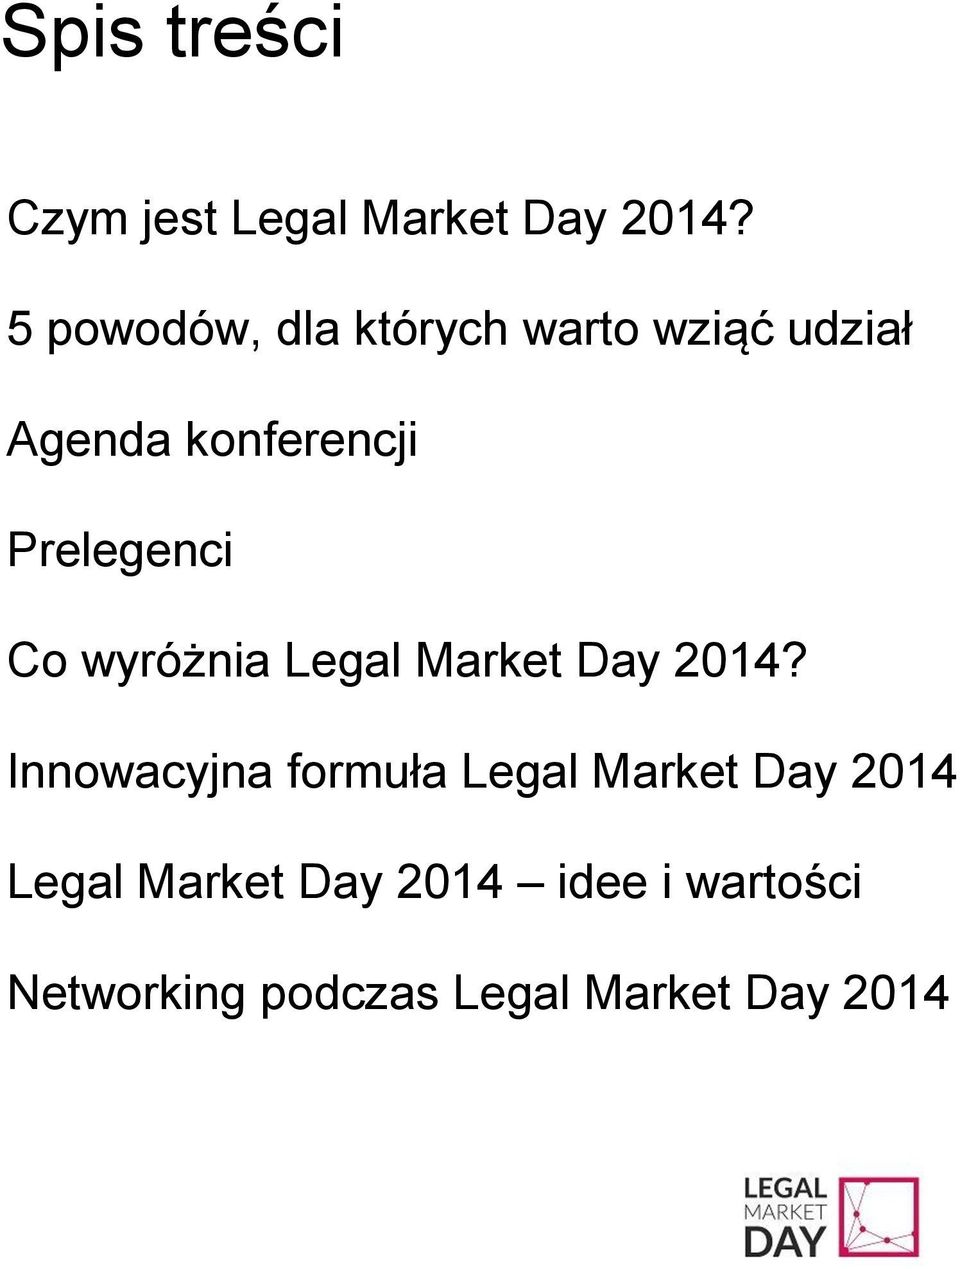 Prelegenci Co wyróżnia Legal Market Day 2014?